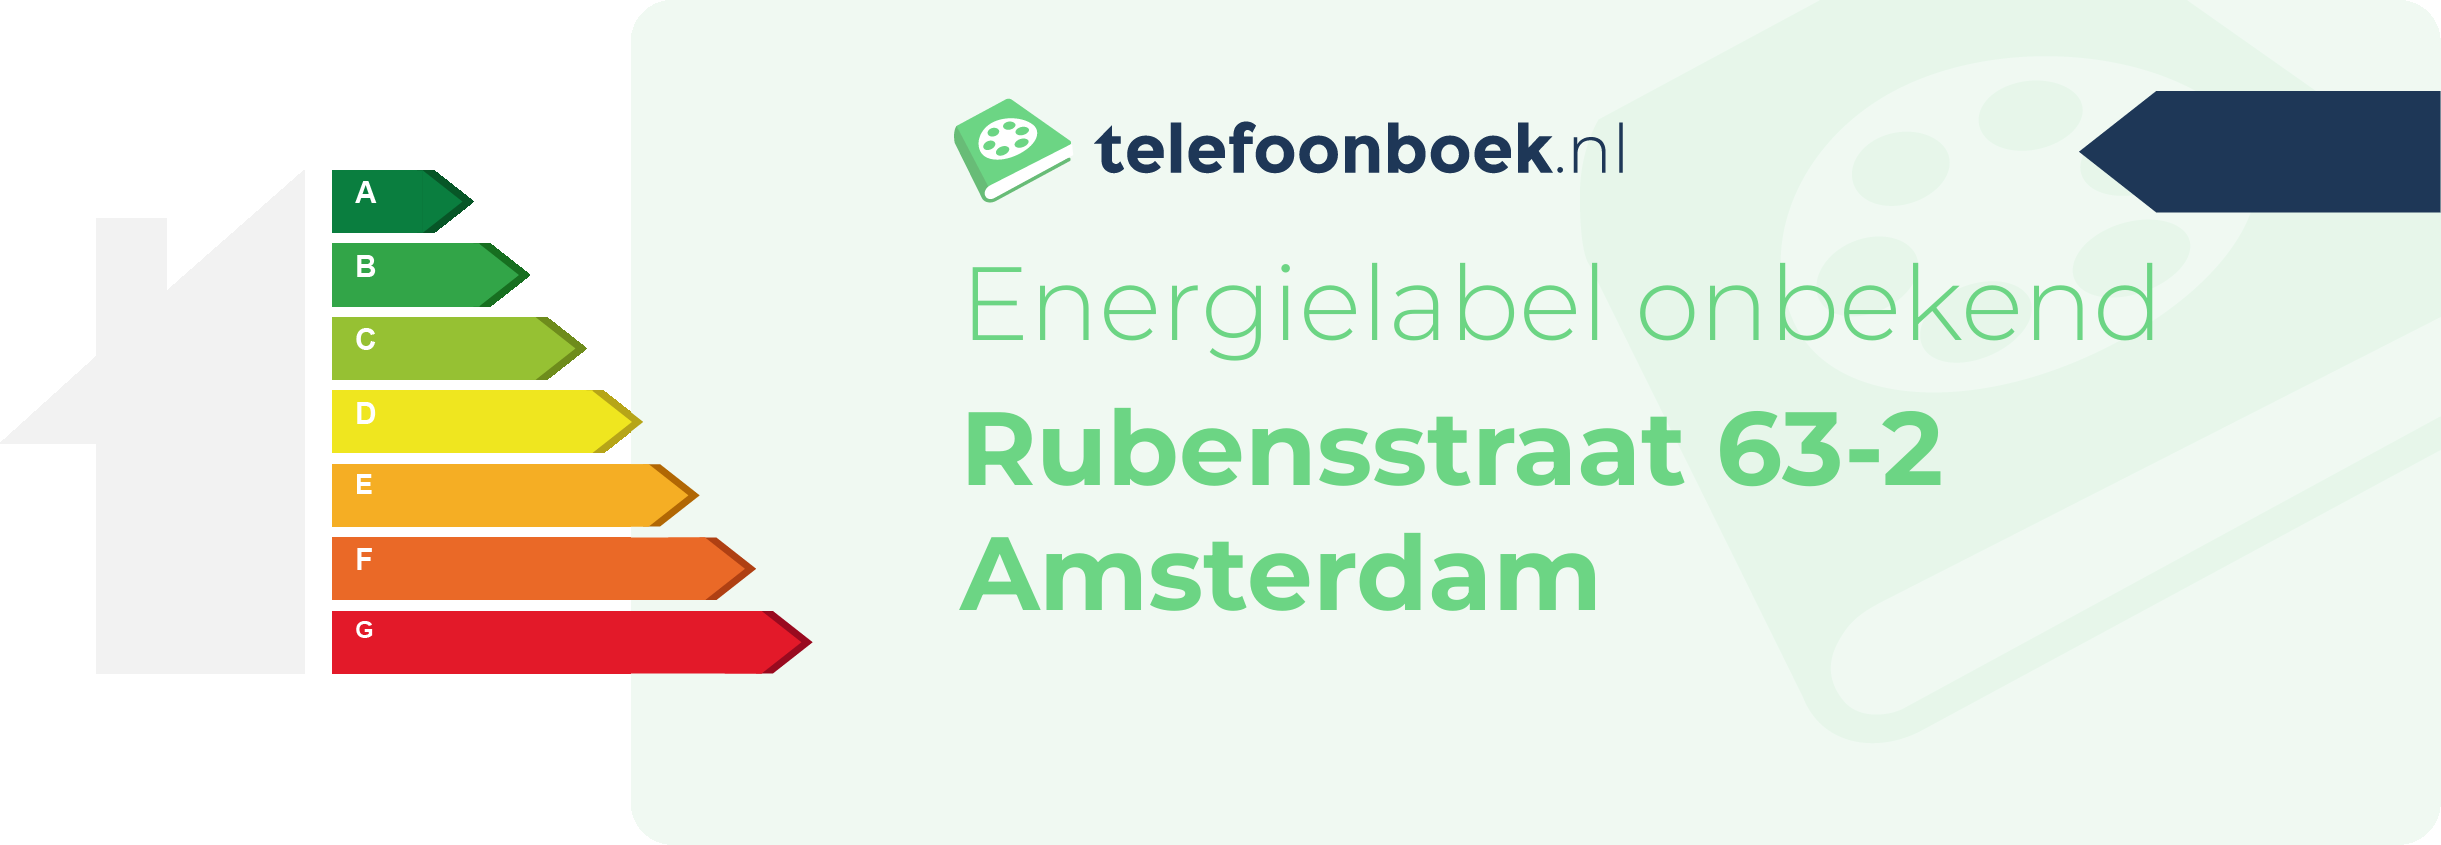 Energielabel Rubensstraat 63-2 Amsterdam